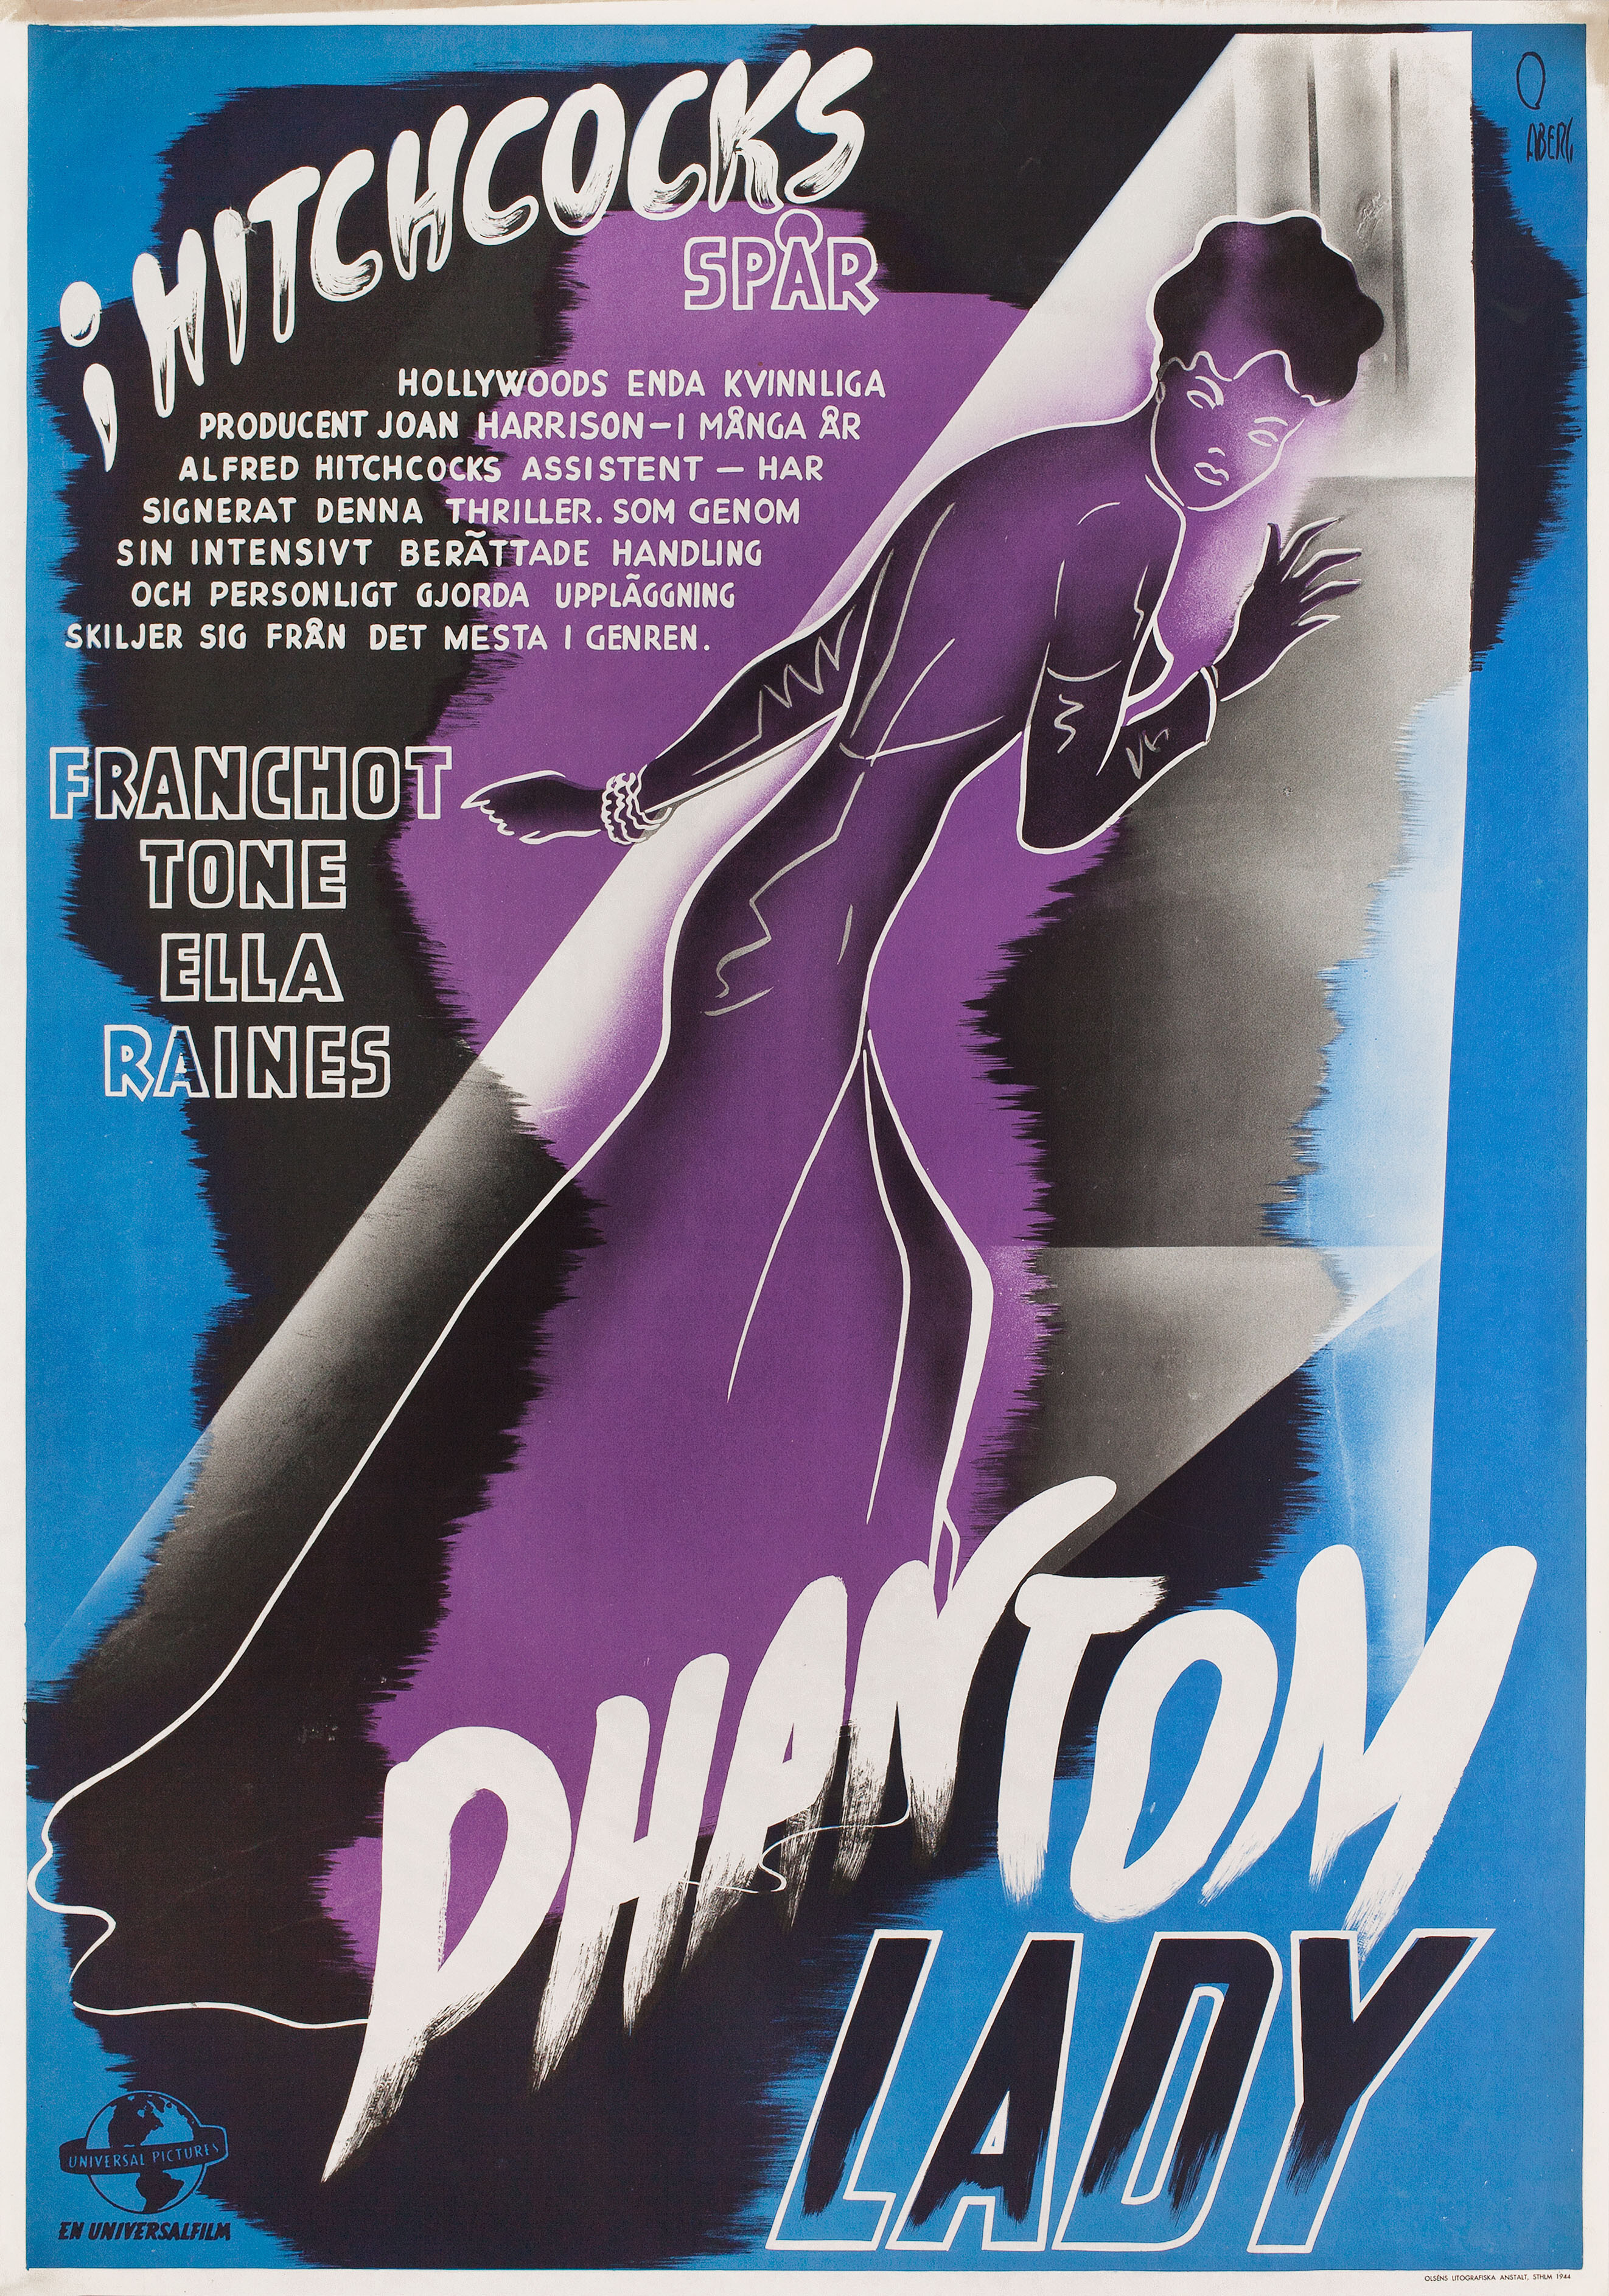 Леди-призрак (Phantom Lady, 1944), режиссёр Роберт Сиодмак, постер к фильму в стиле ар-деко (Швеция, 1944 год), автор Госта Аберг